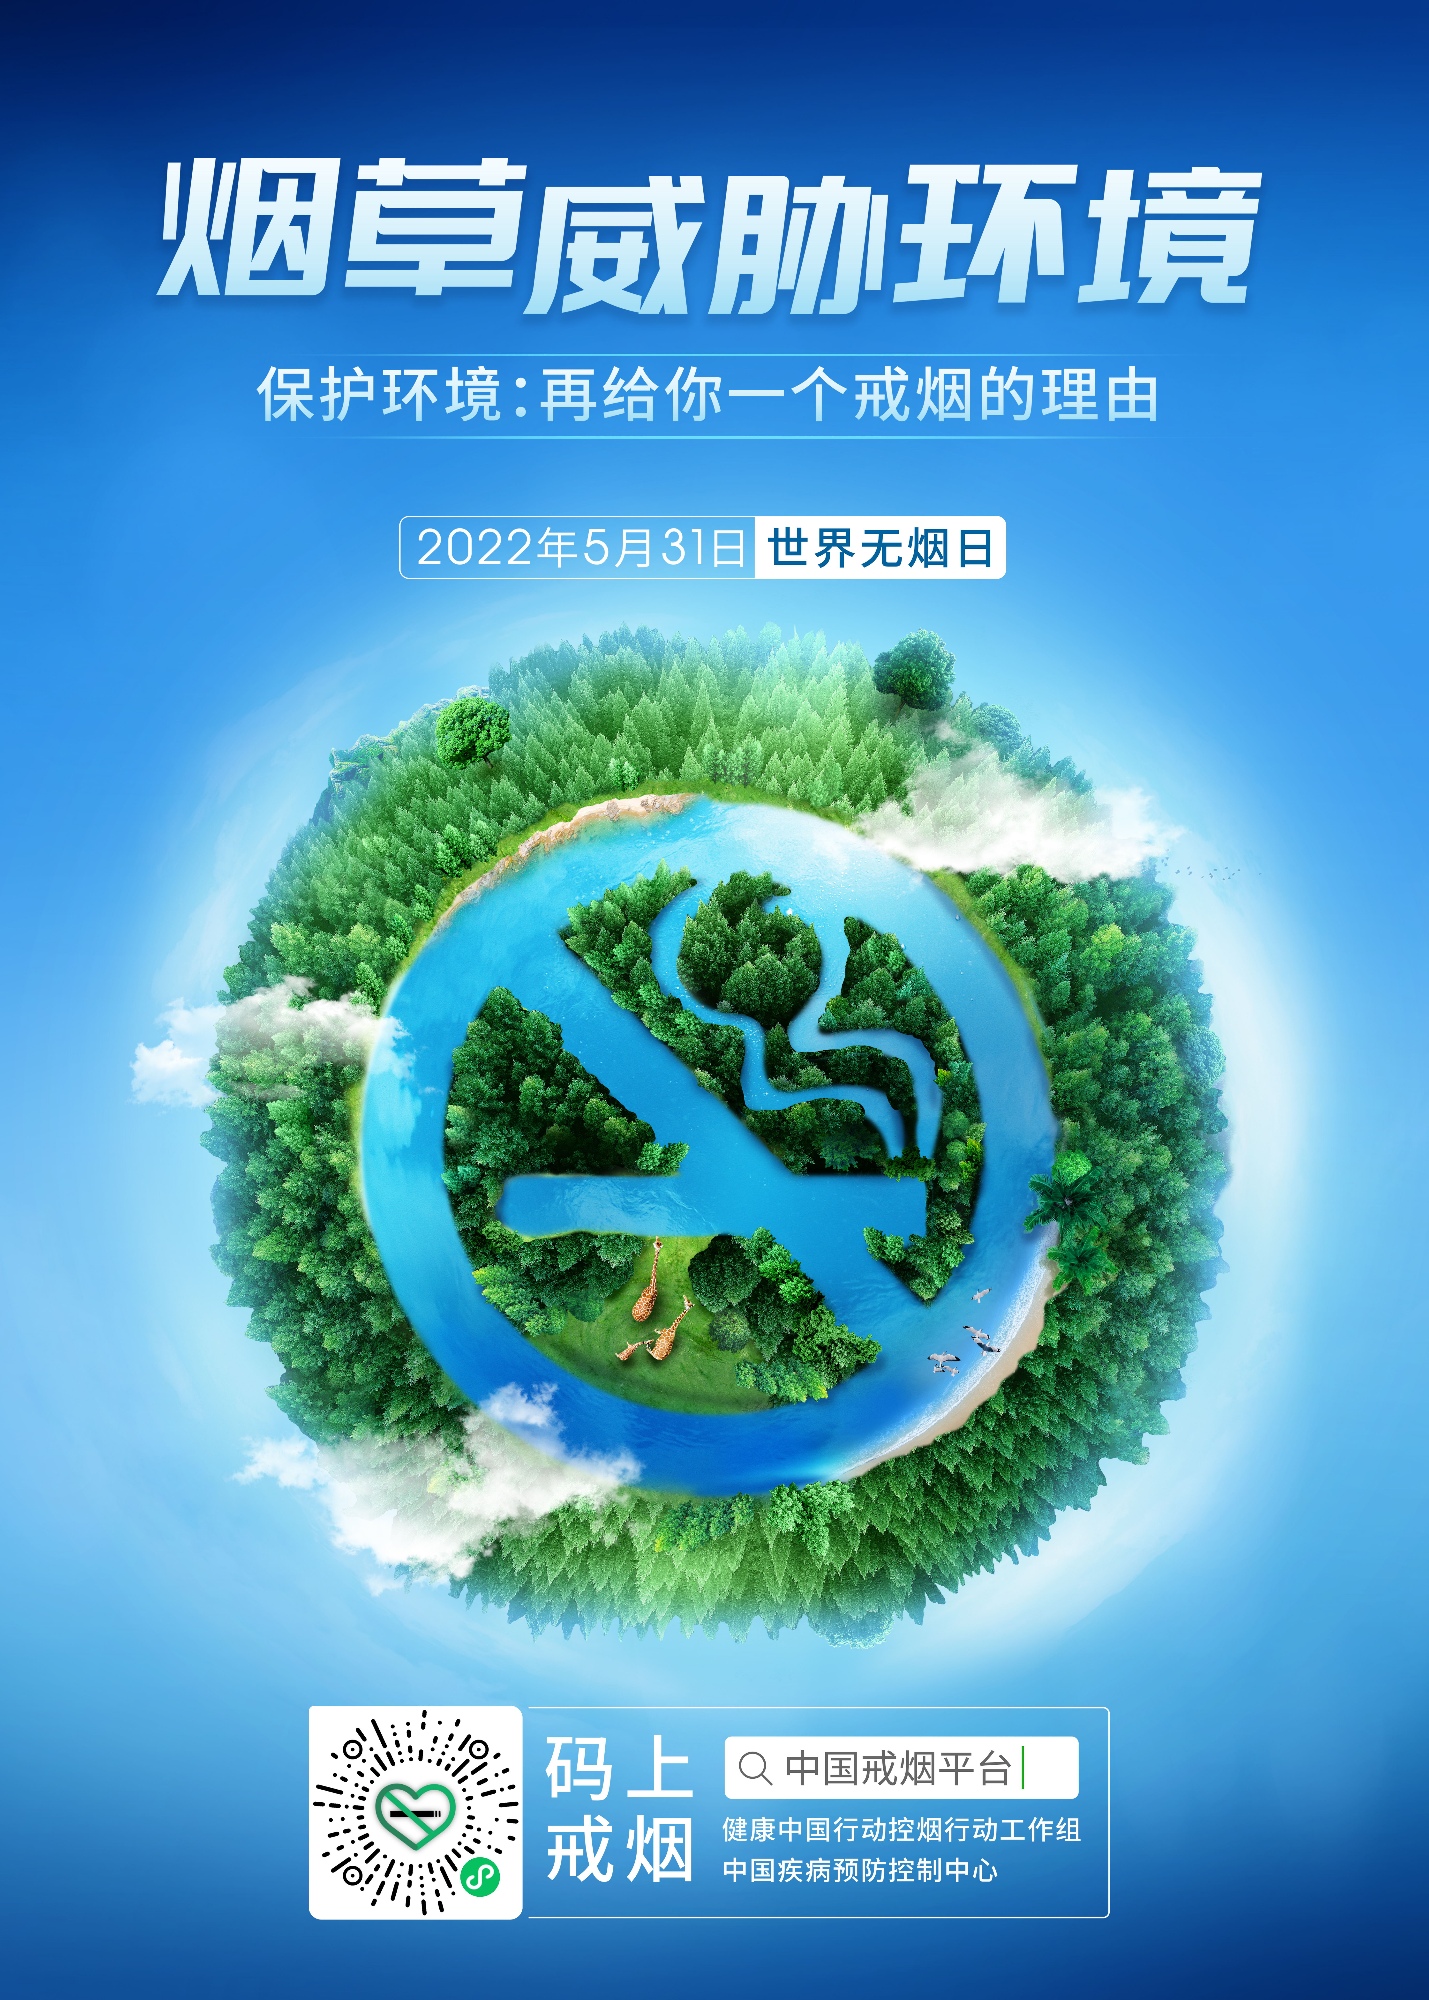 2022世界无烟日主题海报-小版_副本.jpg